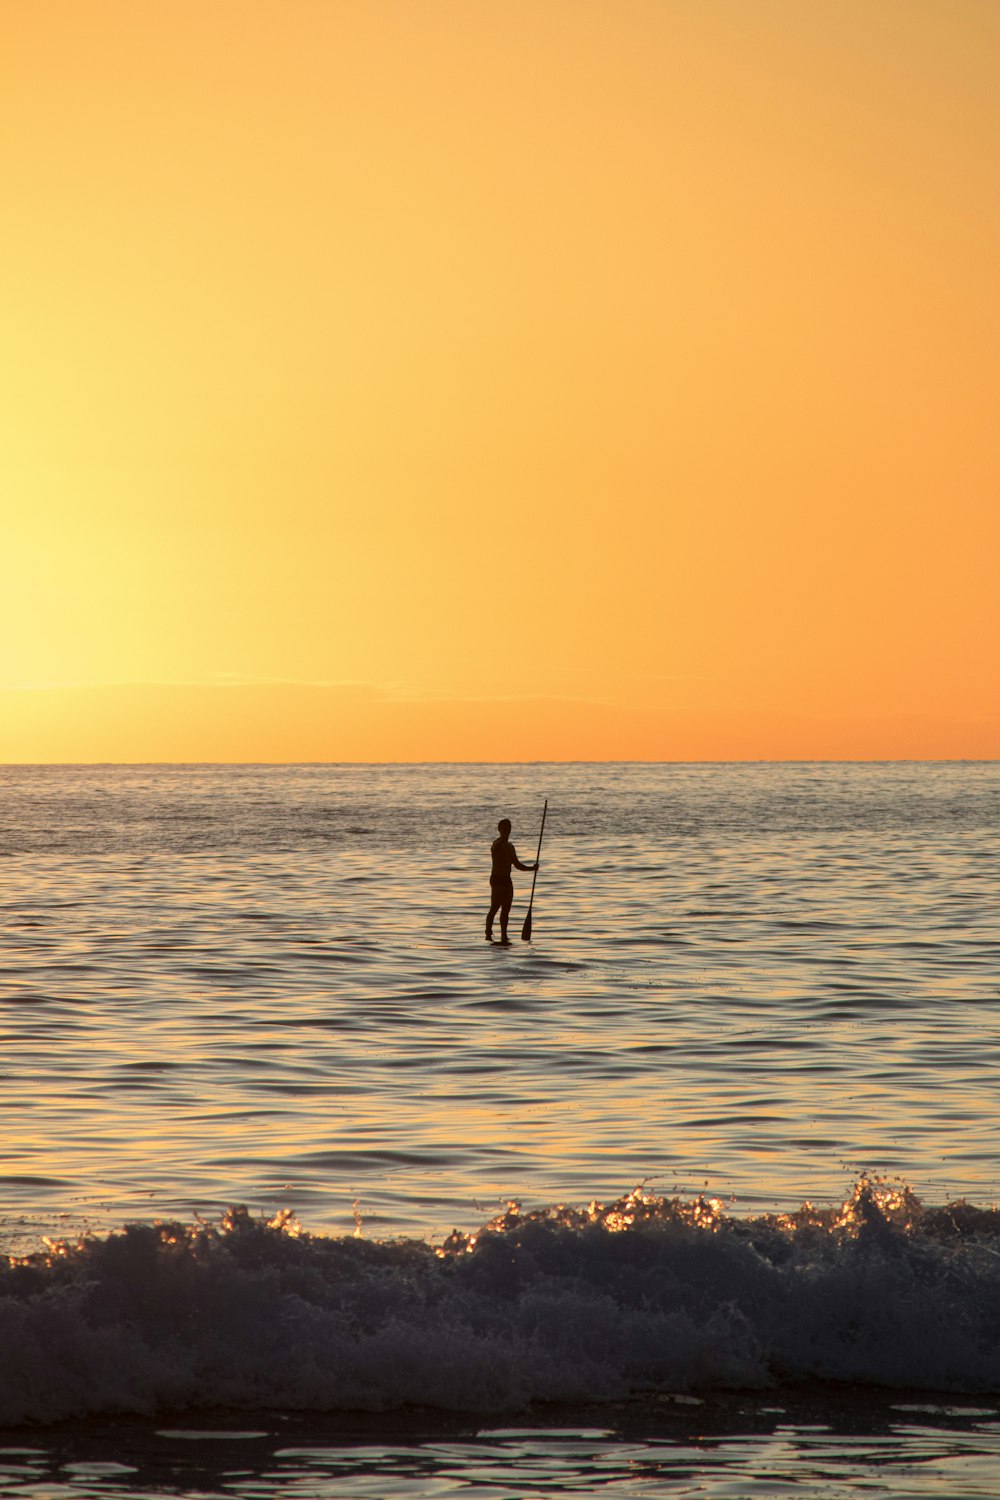 Una persona su una tavola da surf nell'oceano al tramonto